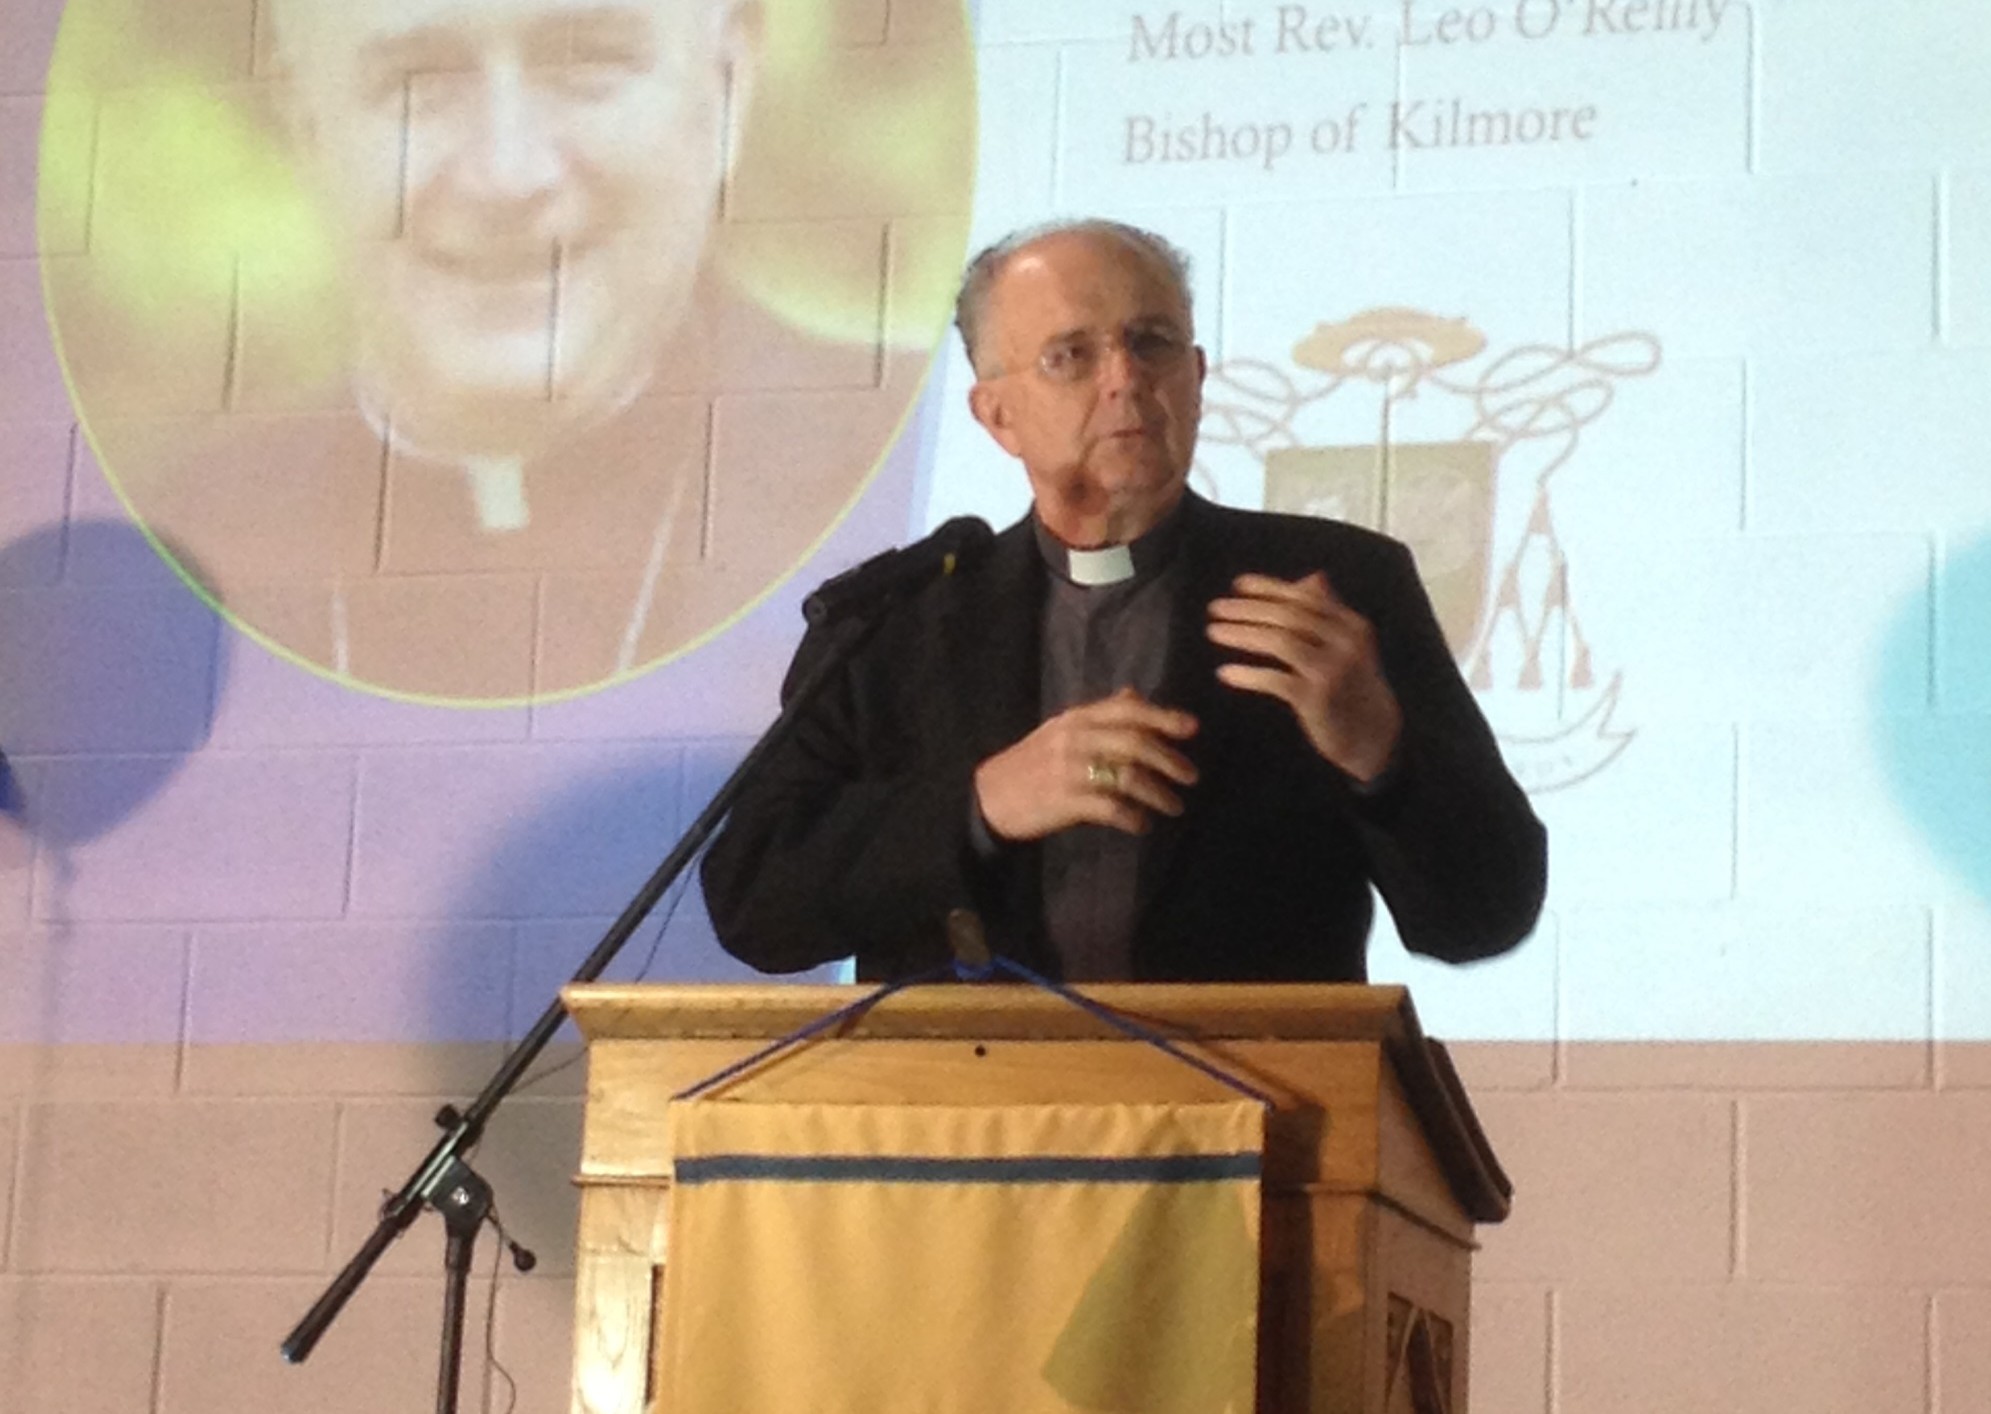 La escasez de sacerdotes encabeza las preocupaciones en la asamblea de Kilmore